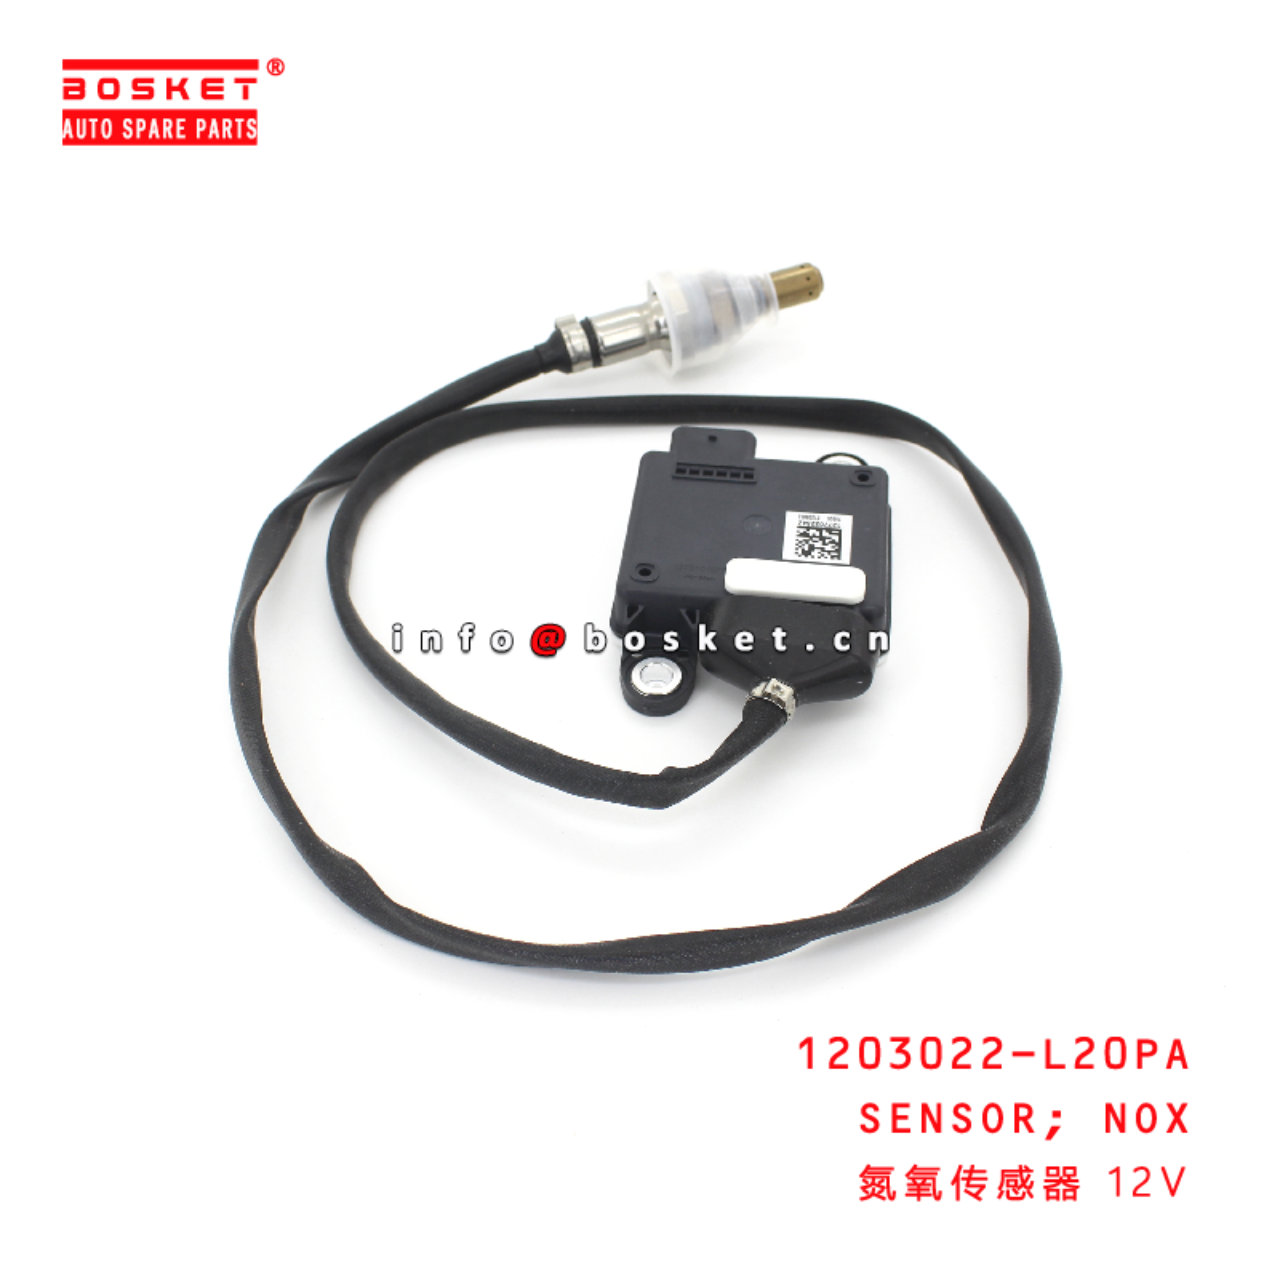 1203022-L20PA Nox Sensor suitable for JMC 1203022-...